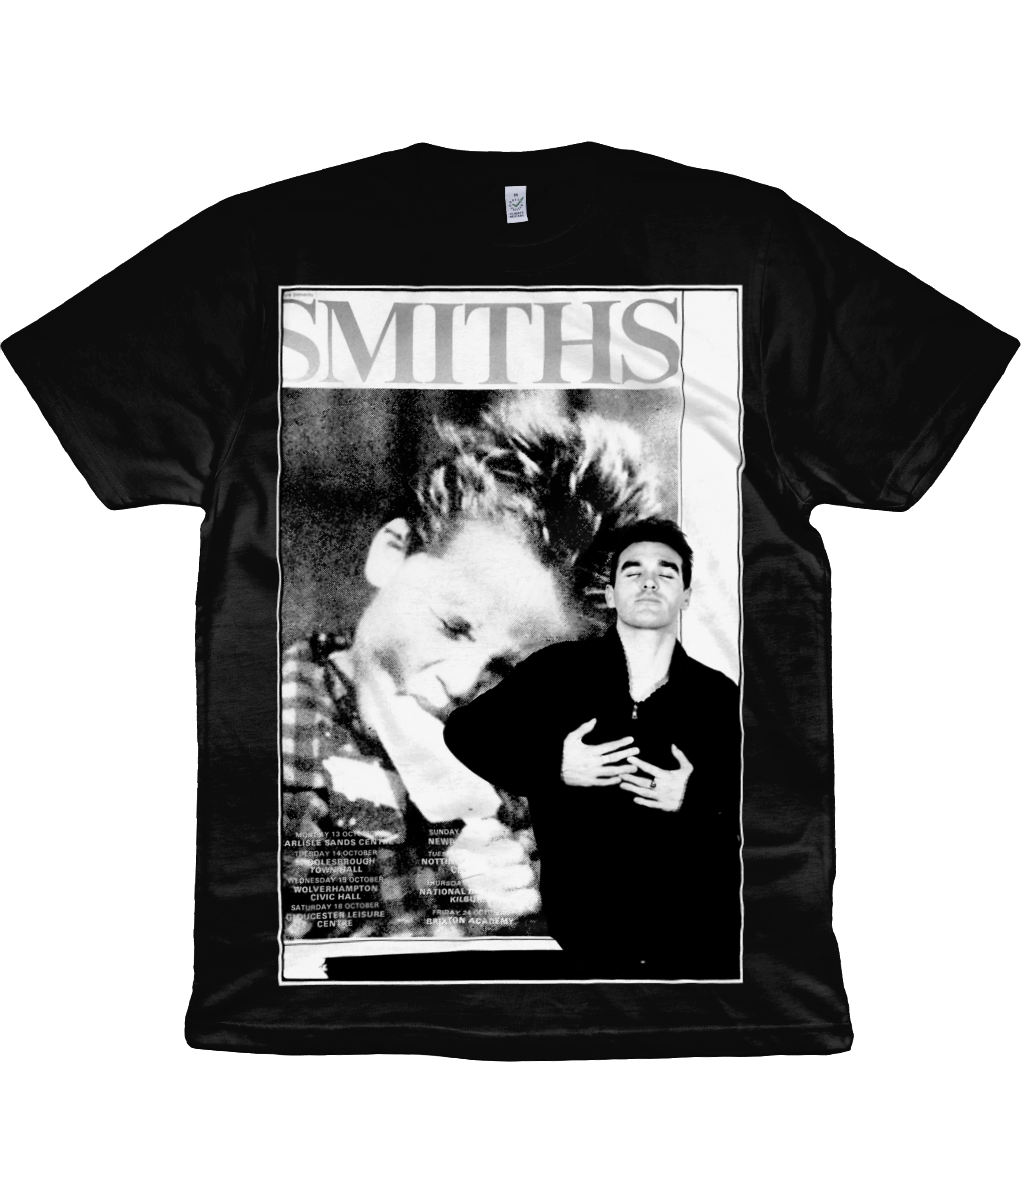 The Smiths - Rough Trade Promo - 1986